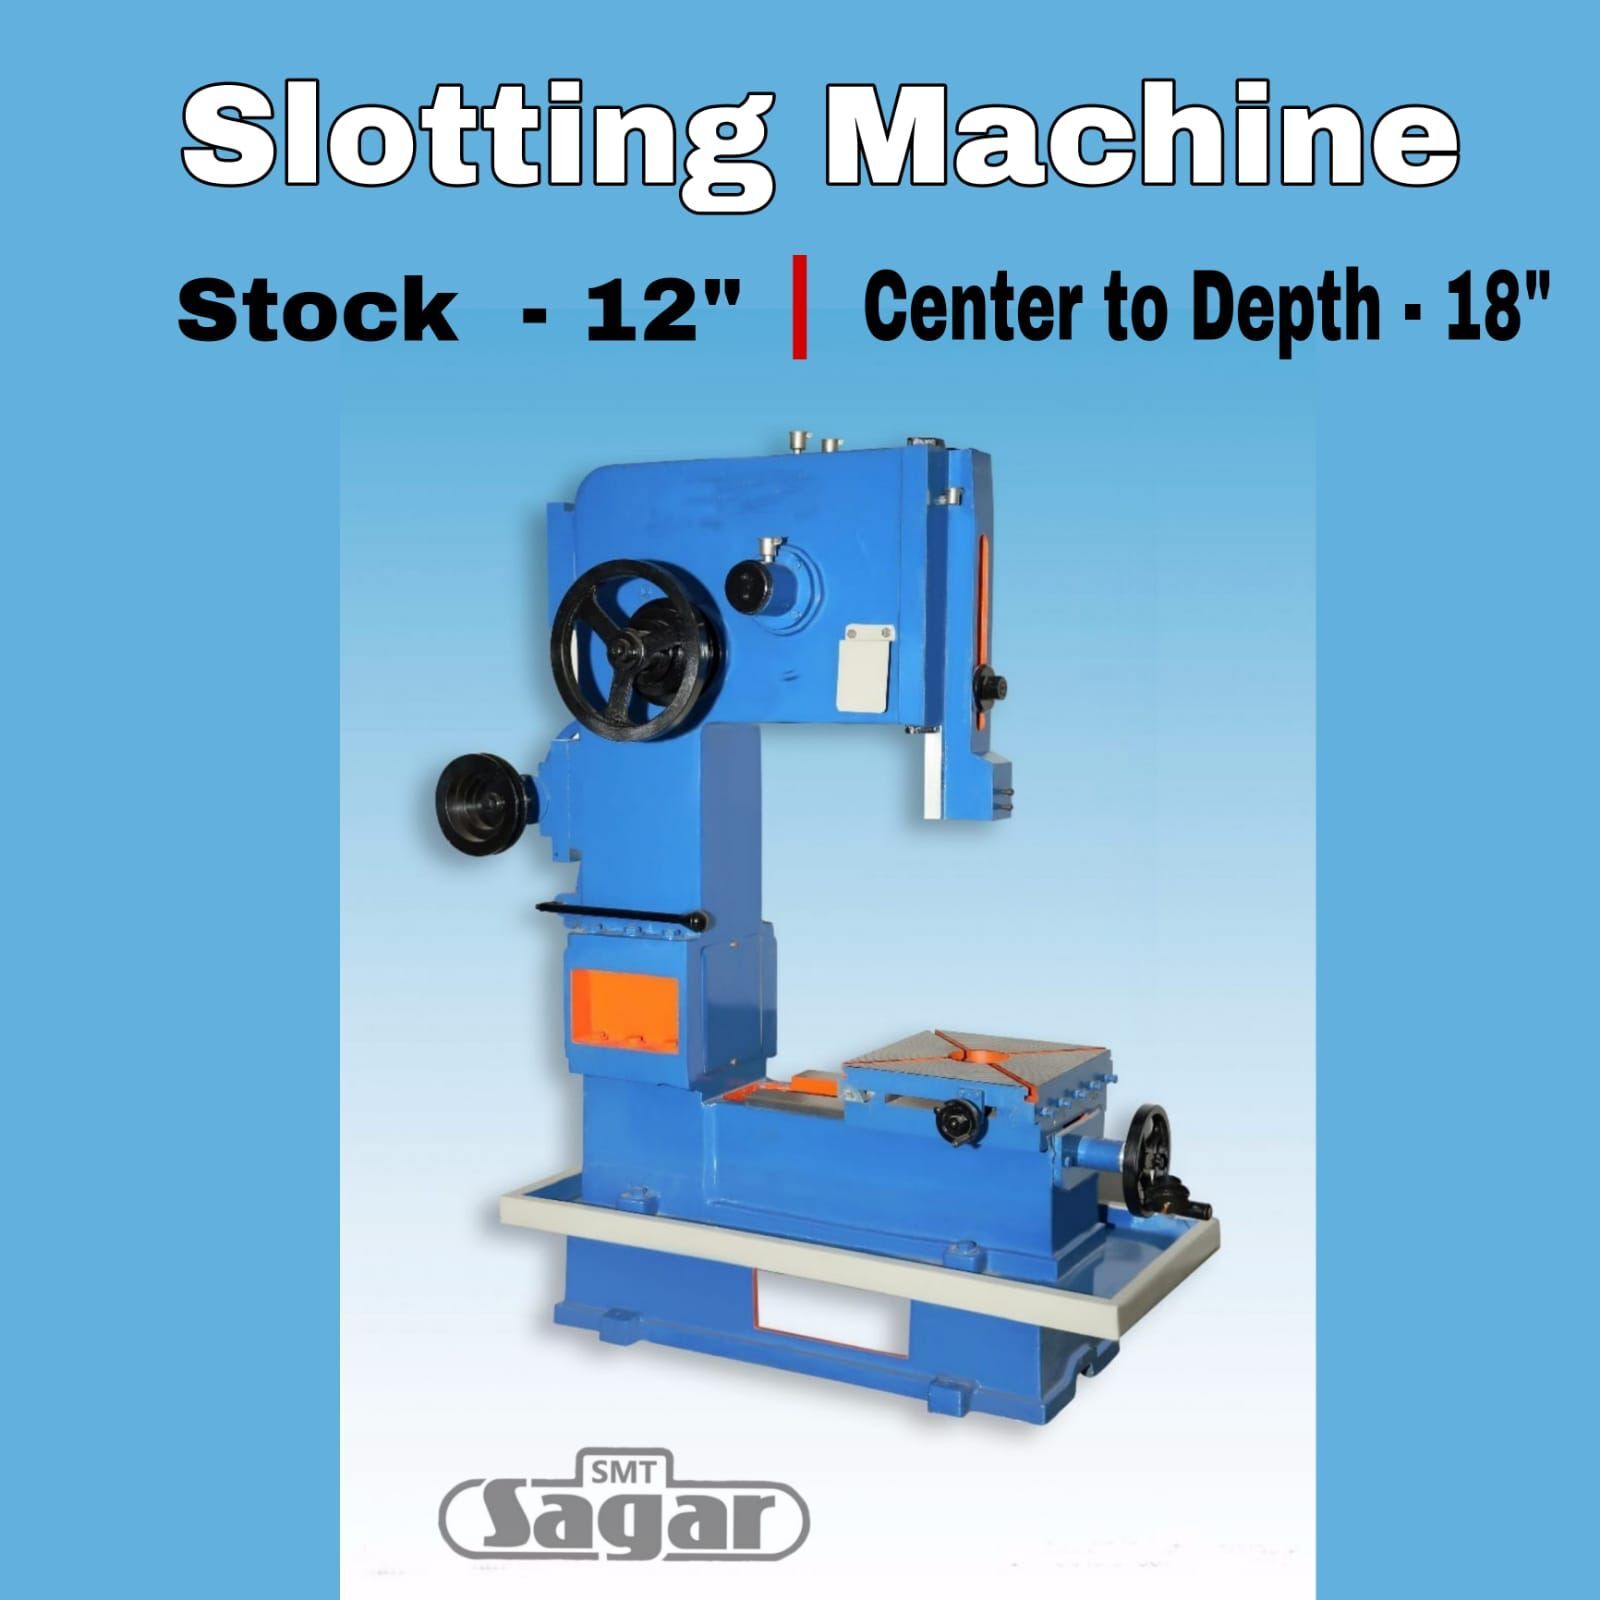 Slotting Machine